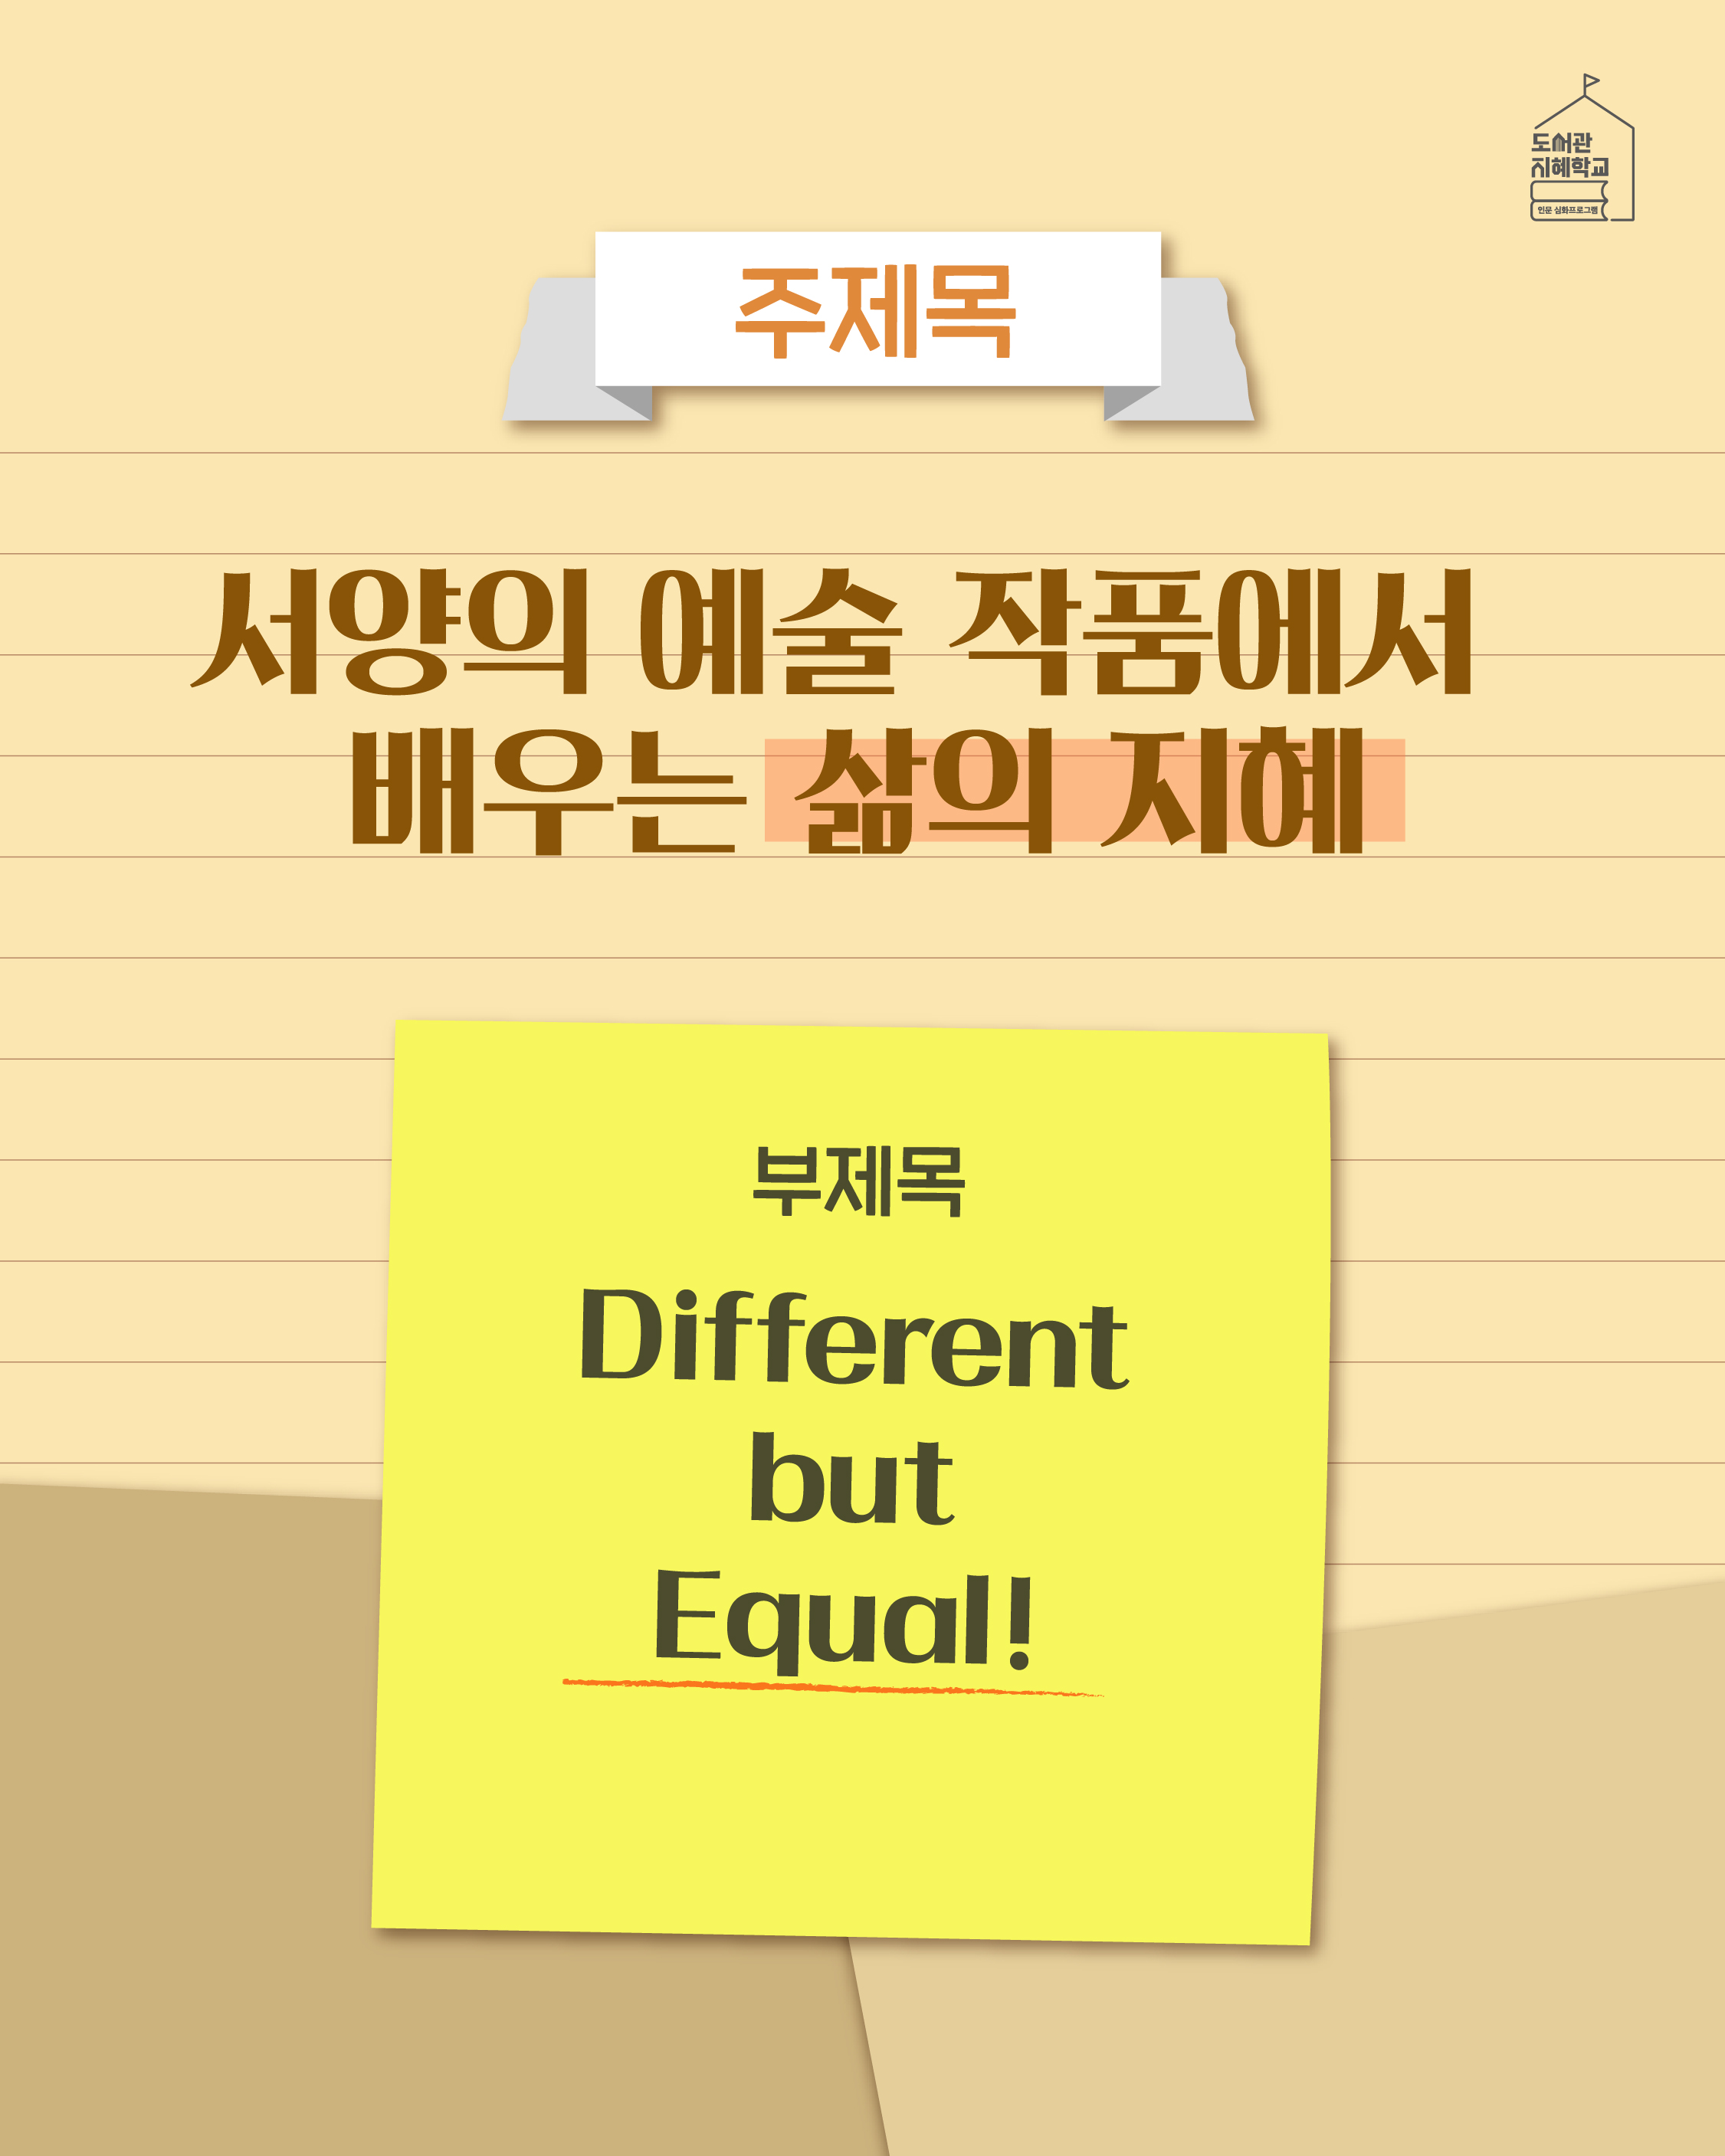 주제목 : 서양의 예술 작품에서 배우는 삶의 지혜 부제목 : Different but Equal!